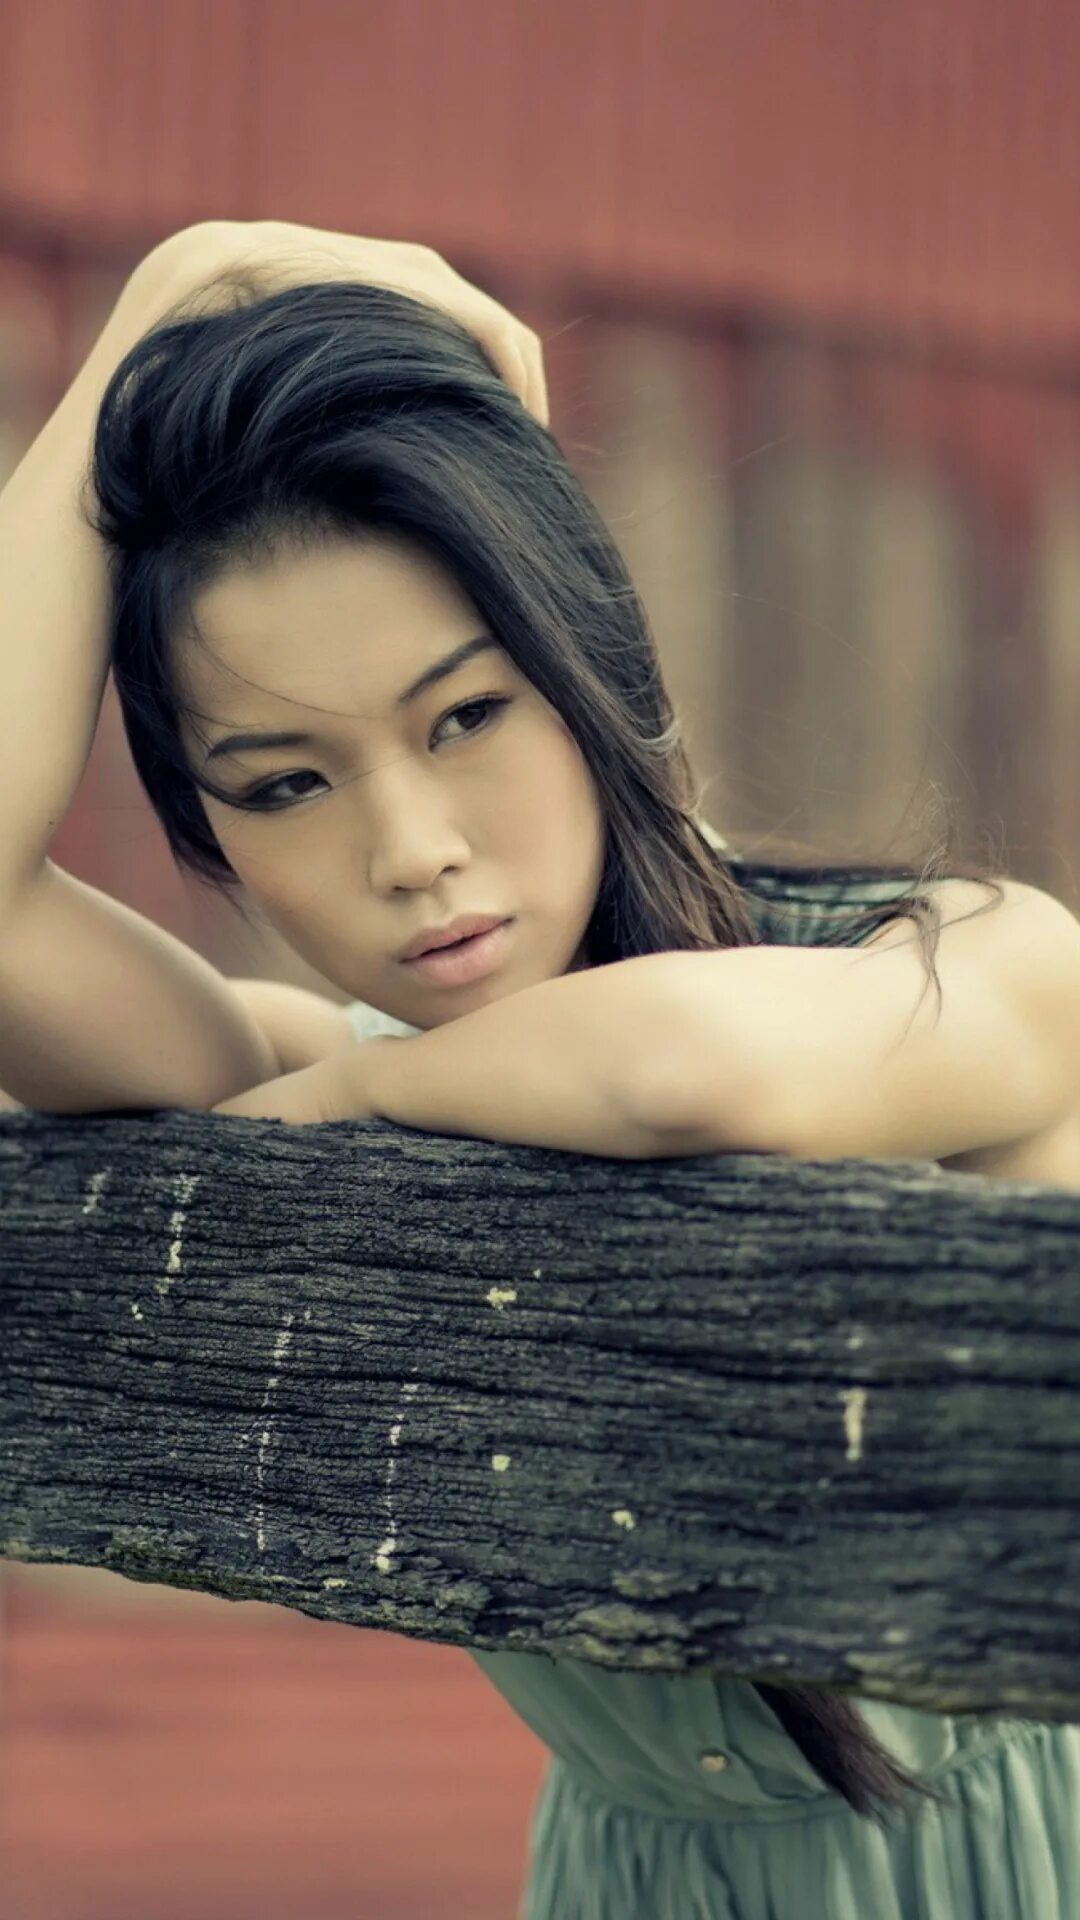 Включи азиатское. Красивые азиатки. Красивые девушки Азии. Очень красивая девушка азиатка. Самые красивые азиатские девушки.